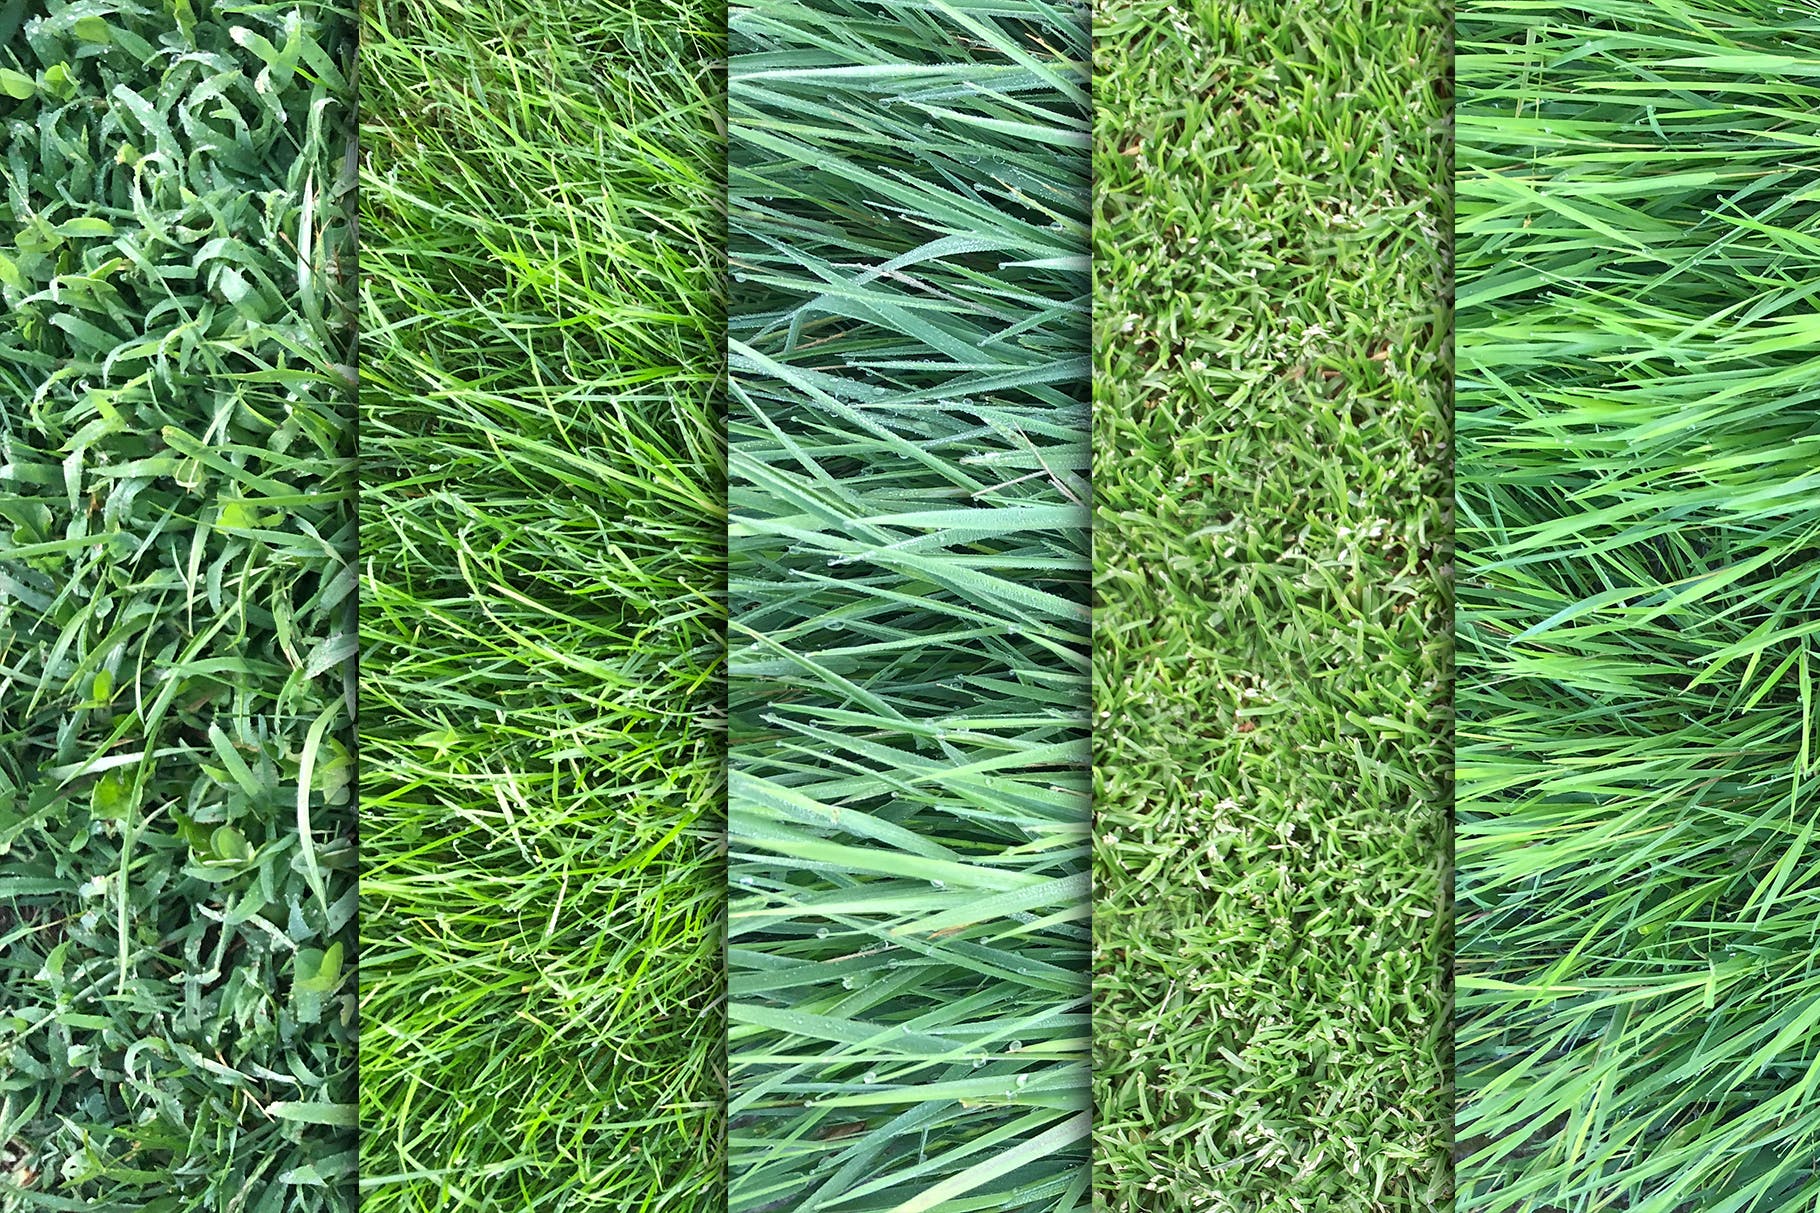 10张高清绿茵草坪照片背景素材v3 Grass Textures x10 Vol 3插图(1)